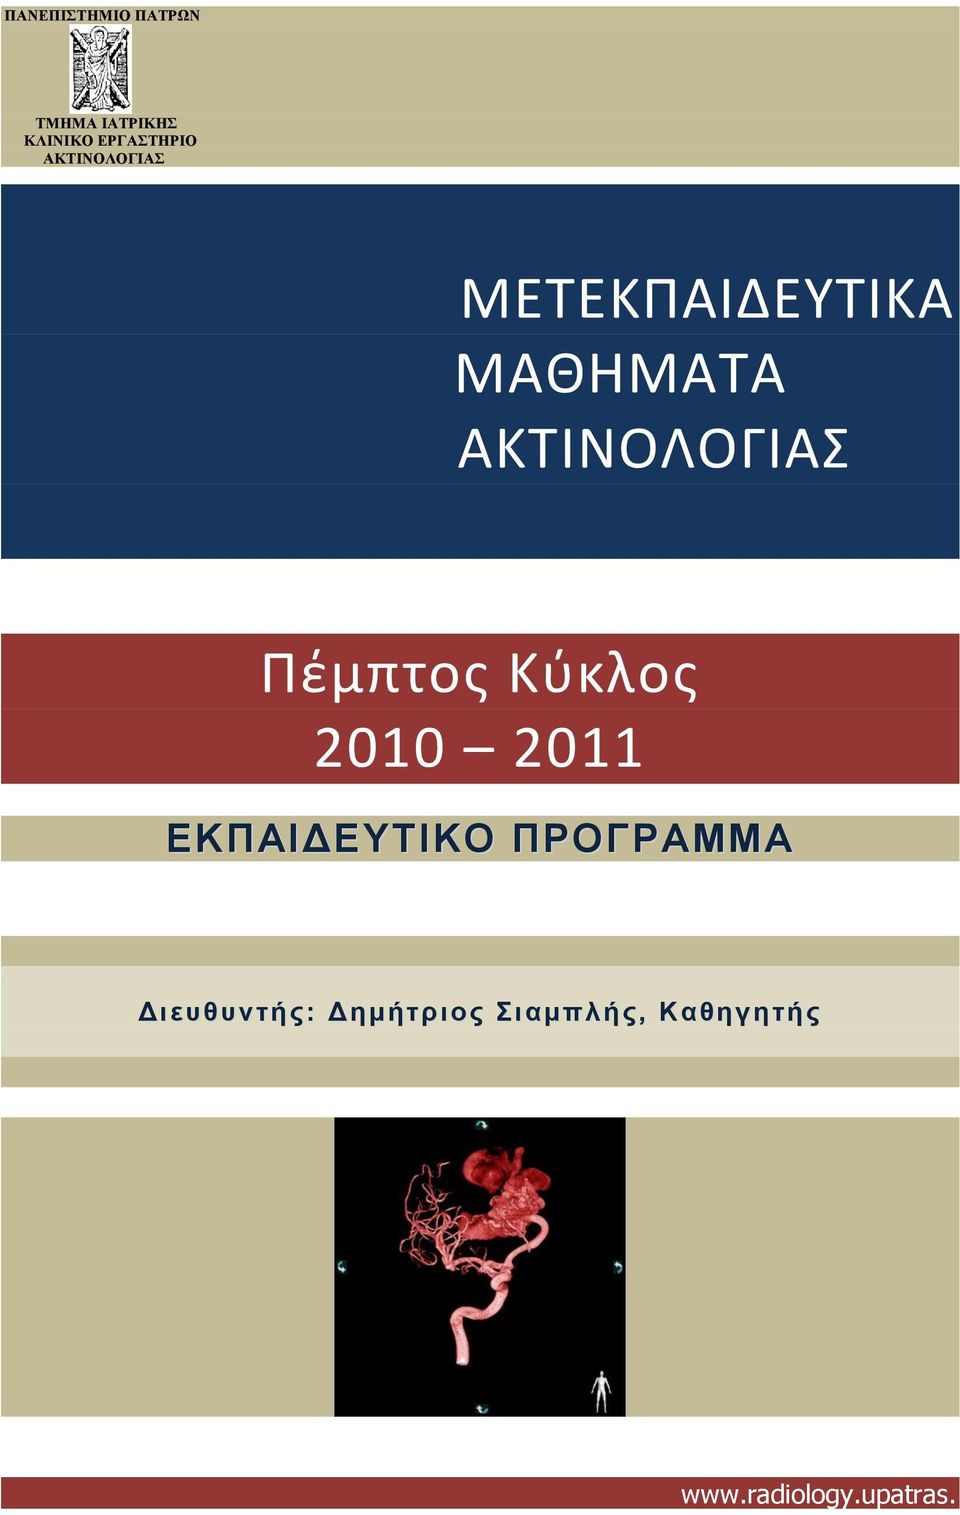 Πζμπτοσ Κφκλοσ 2010 2011 ΕΚΠΑΙΔΕΤΣΙΚΟ ΠΡΟΓΡΑΜΜΑ